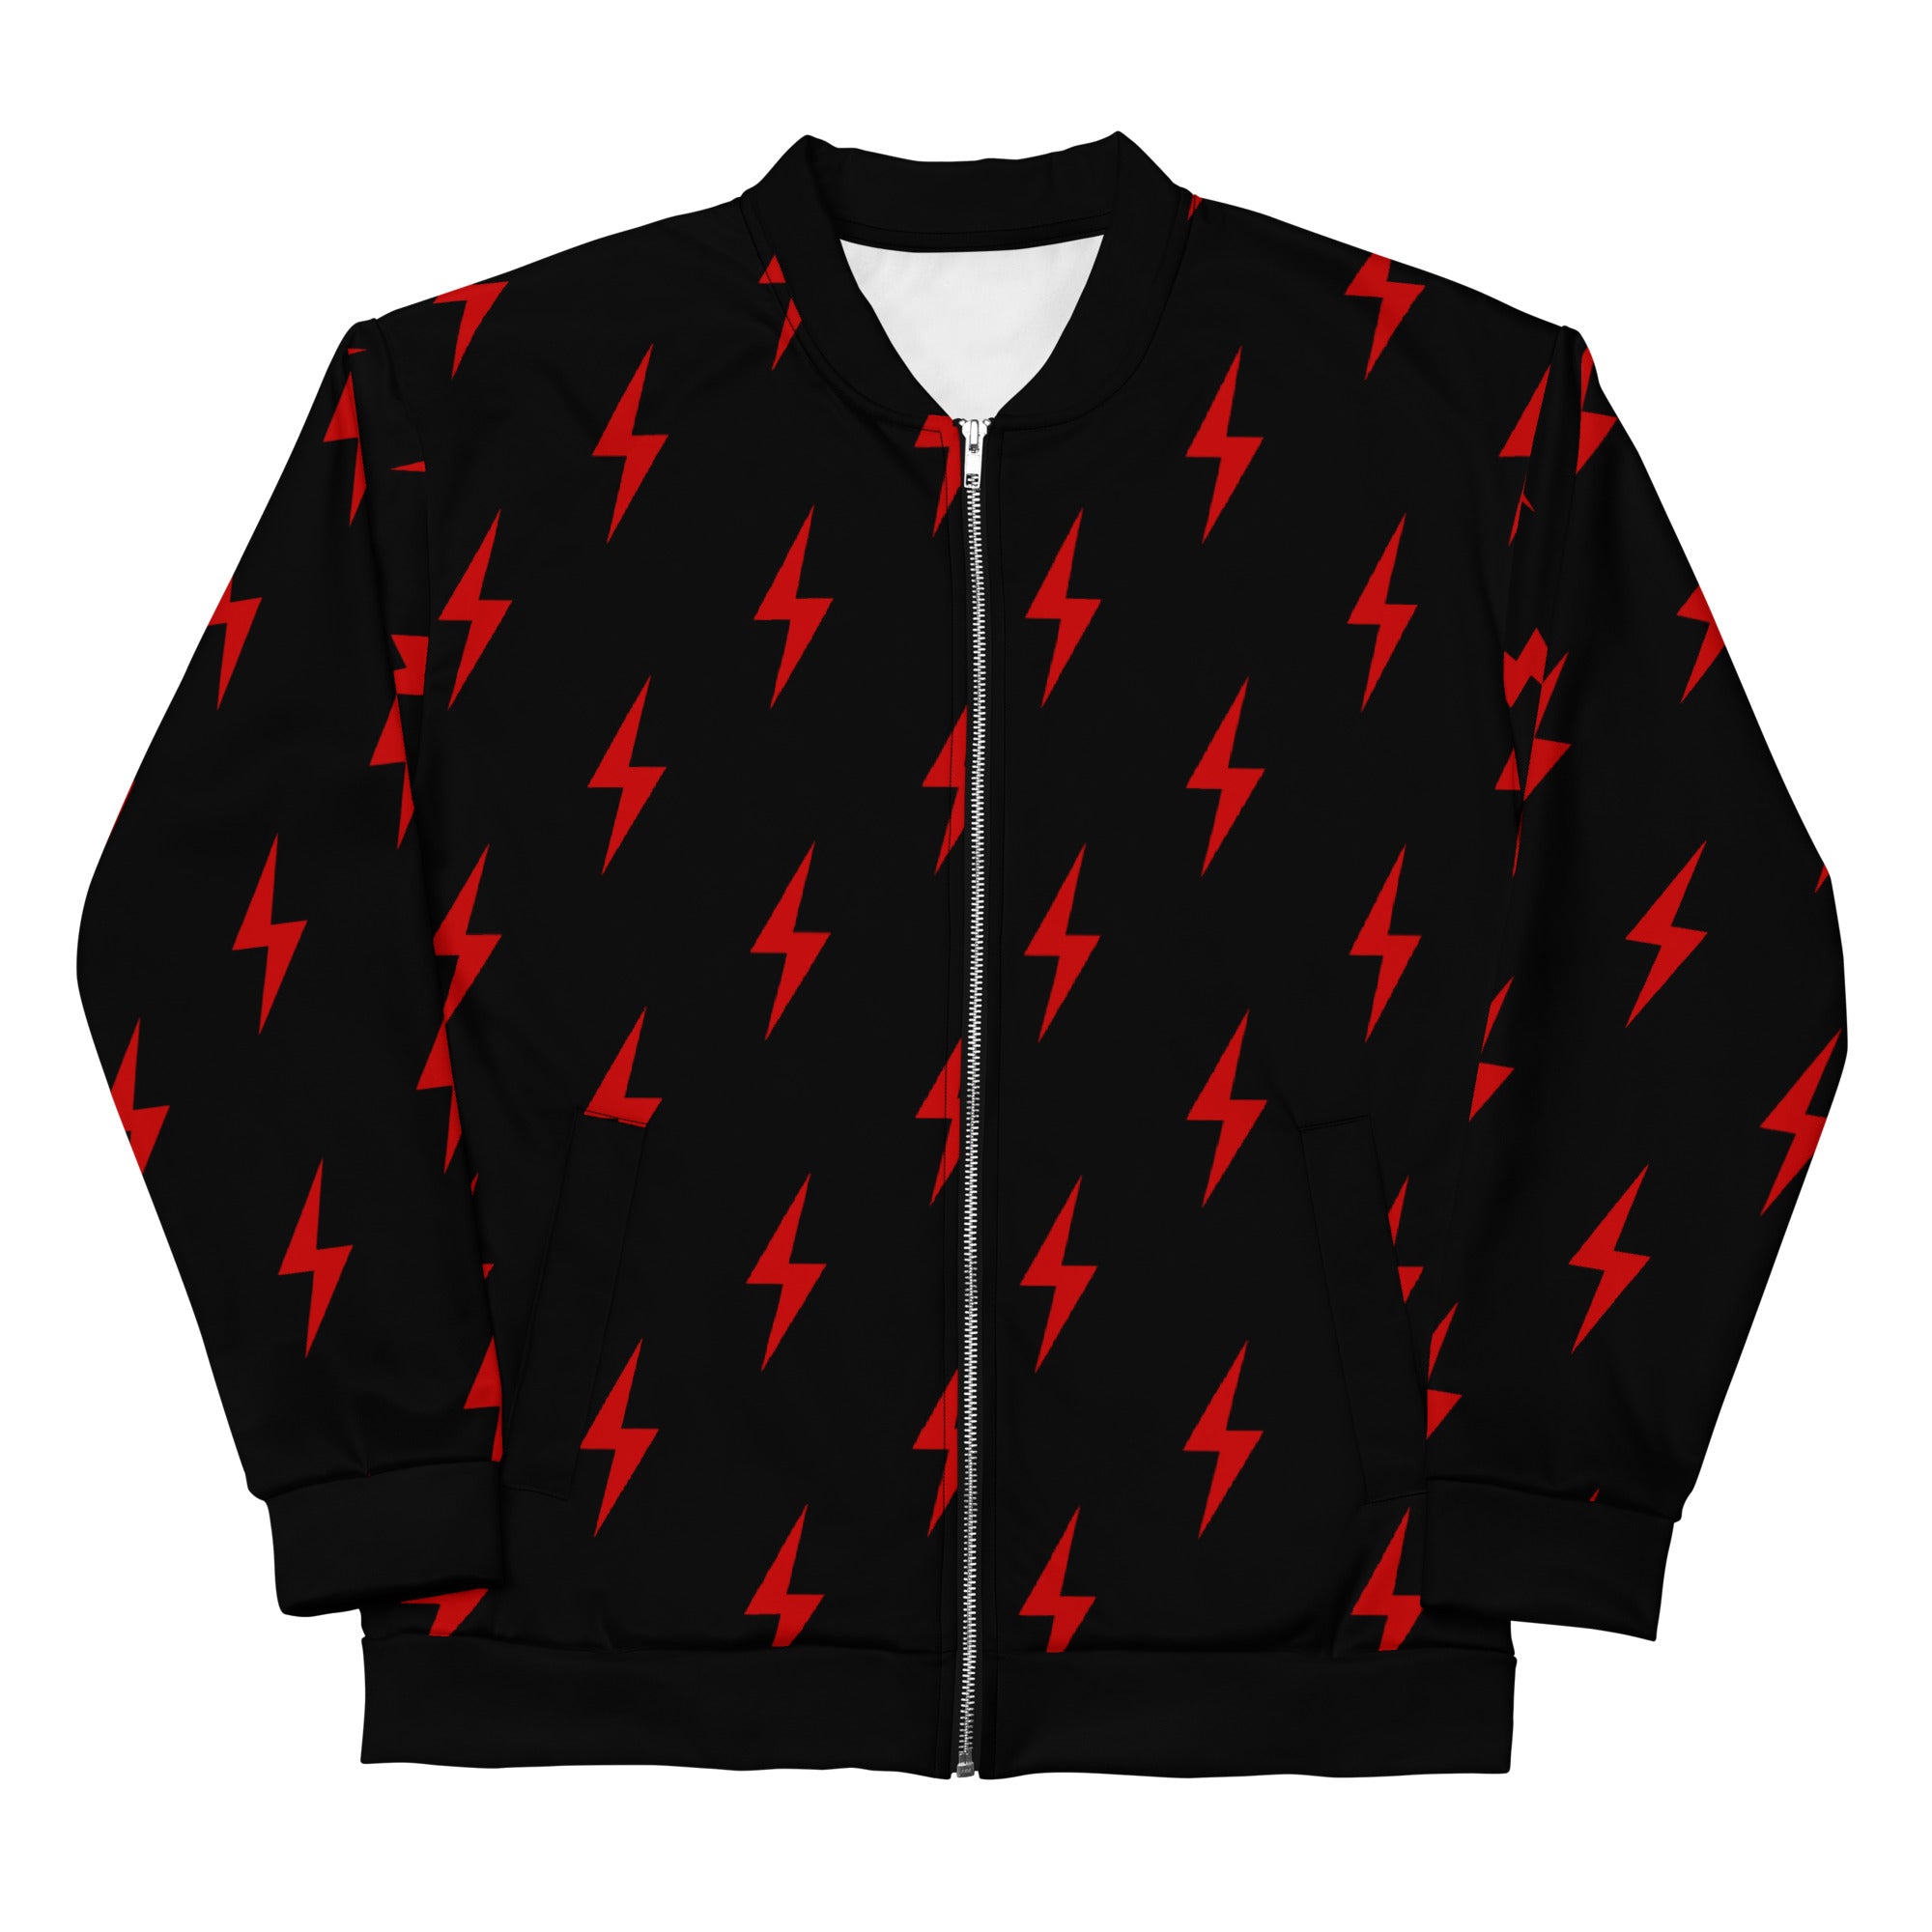 New Rockstars lightning bolt bomber jacket. 